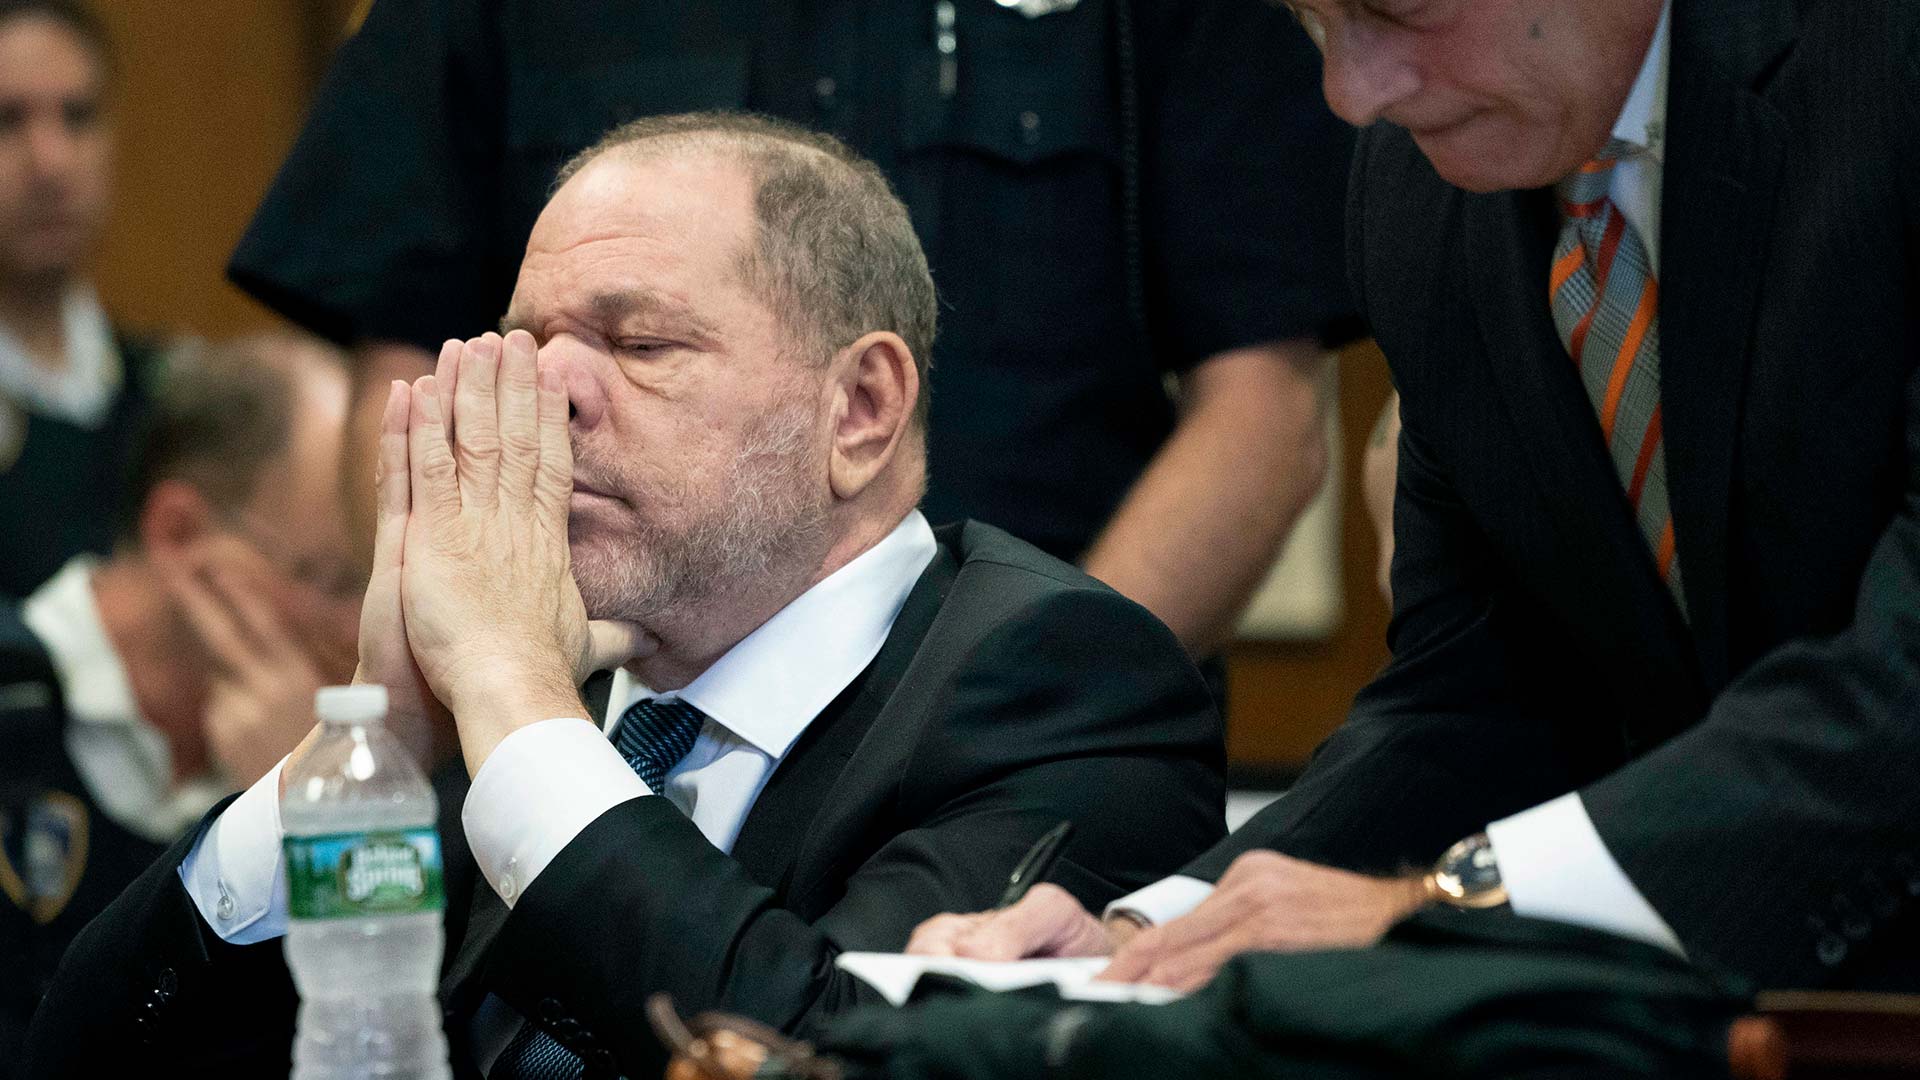 Un nuevo libro saca a la luz detalles sobre las acusaciones de agresión sexual a Weinstein